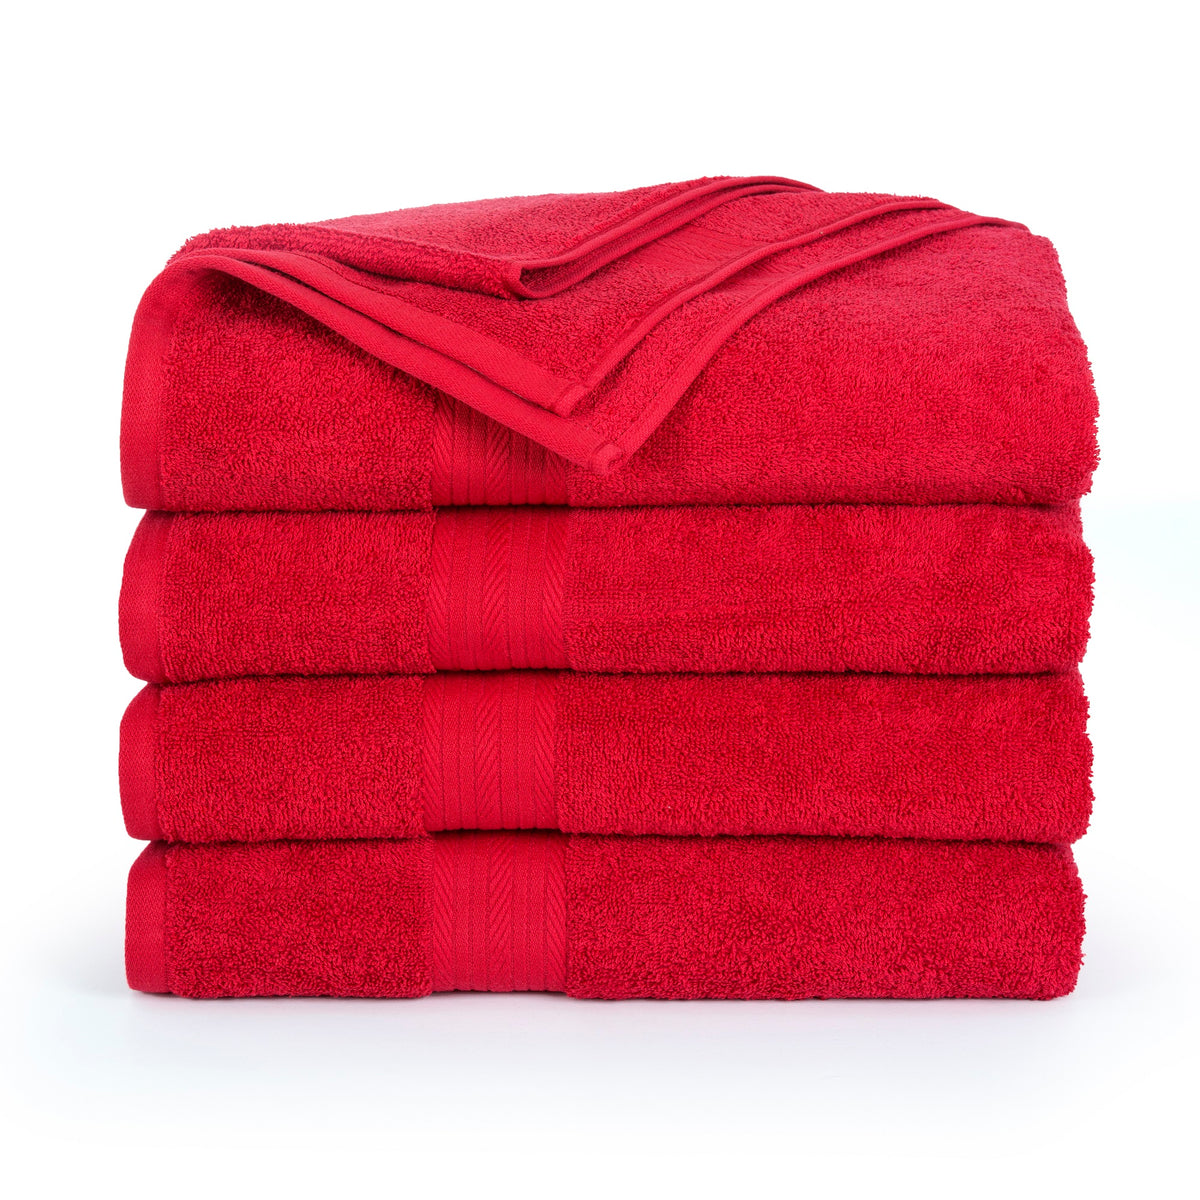 Bath Towel - Pack of 4